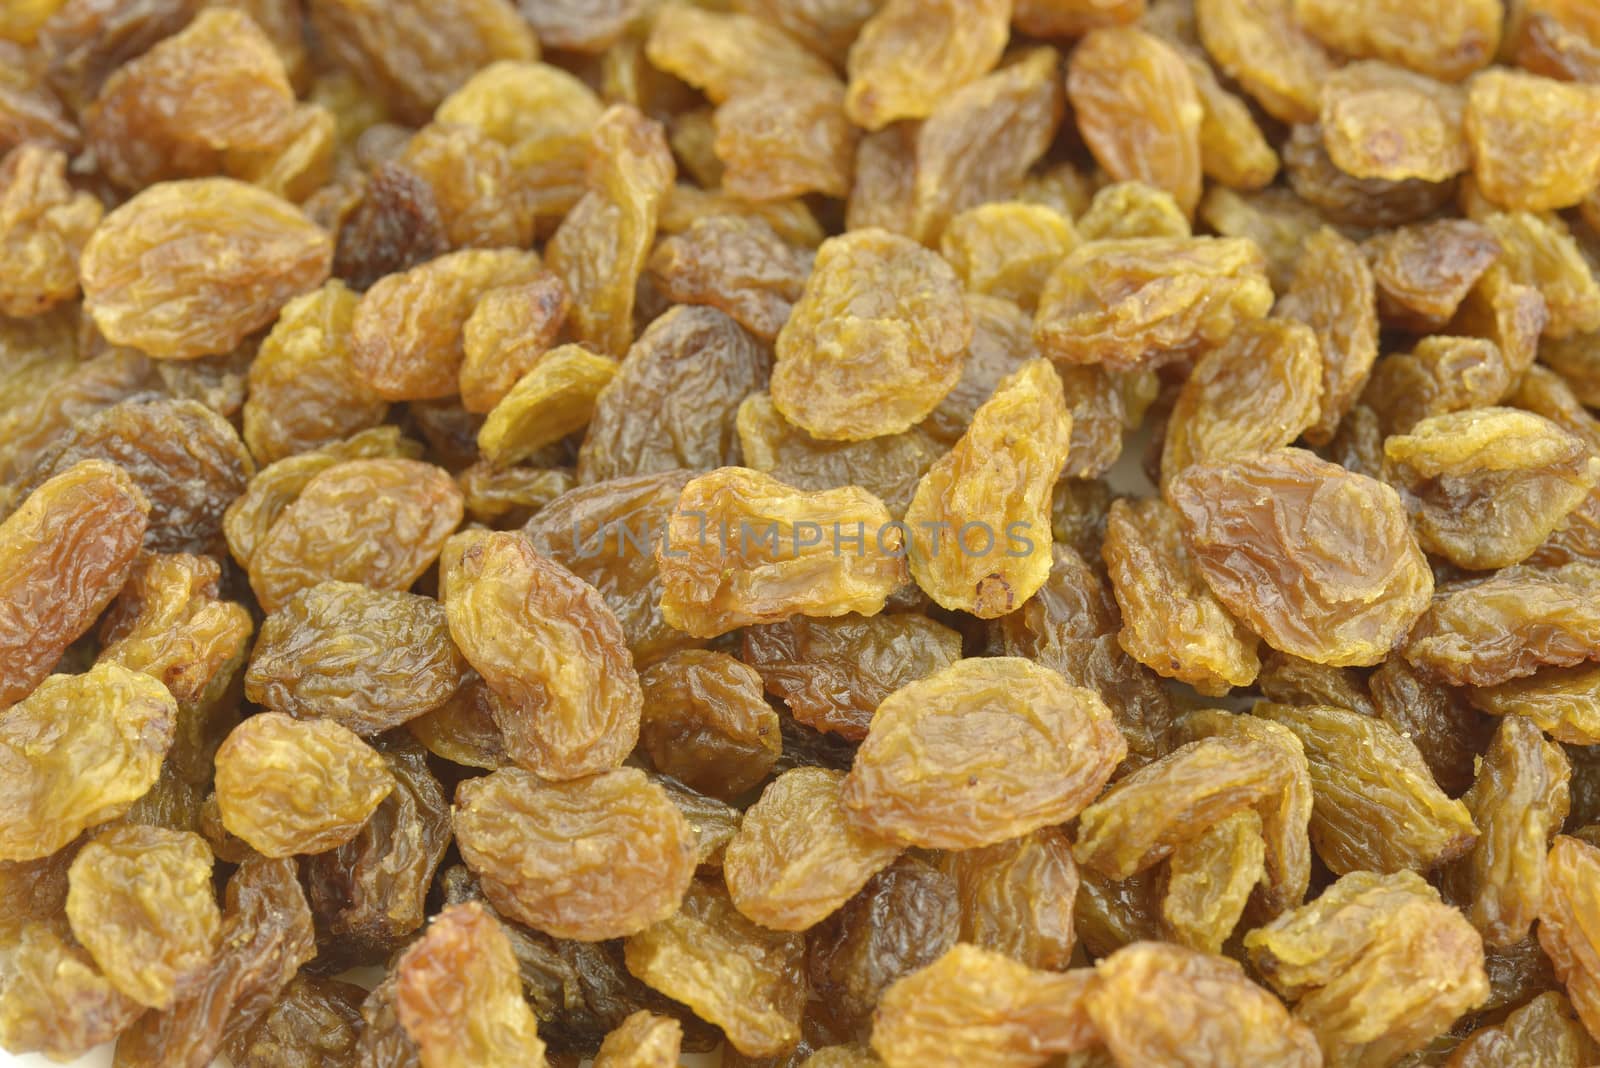 Golden raisins by Hbak